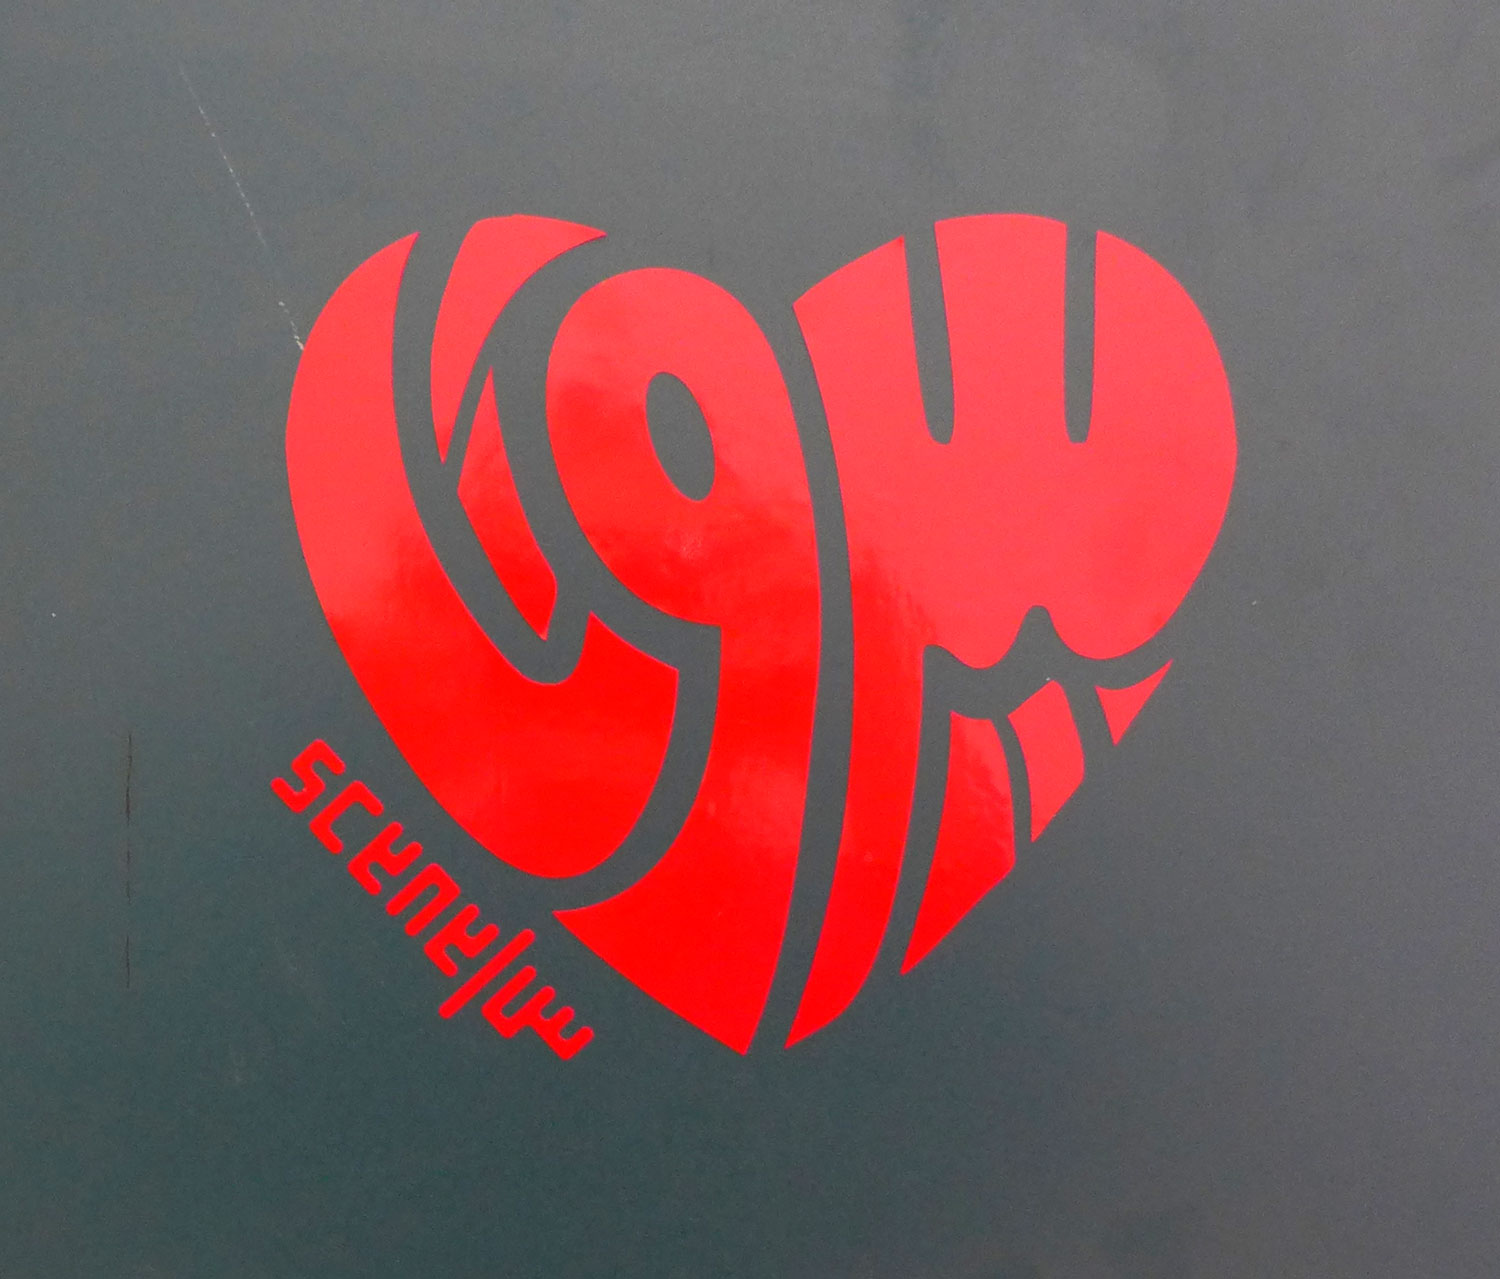 Le Cœur de Beyrouth, une création de Céline qui signifie « J’aime Beyrouth », mais aussi « Beyrouth m’aime ».